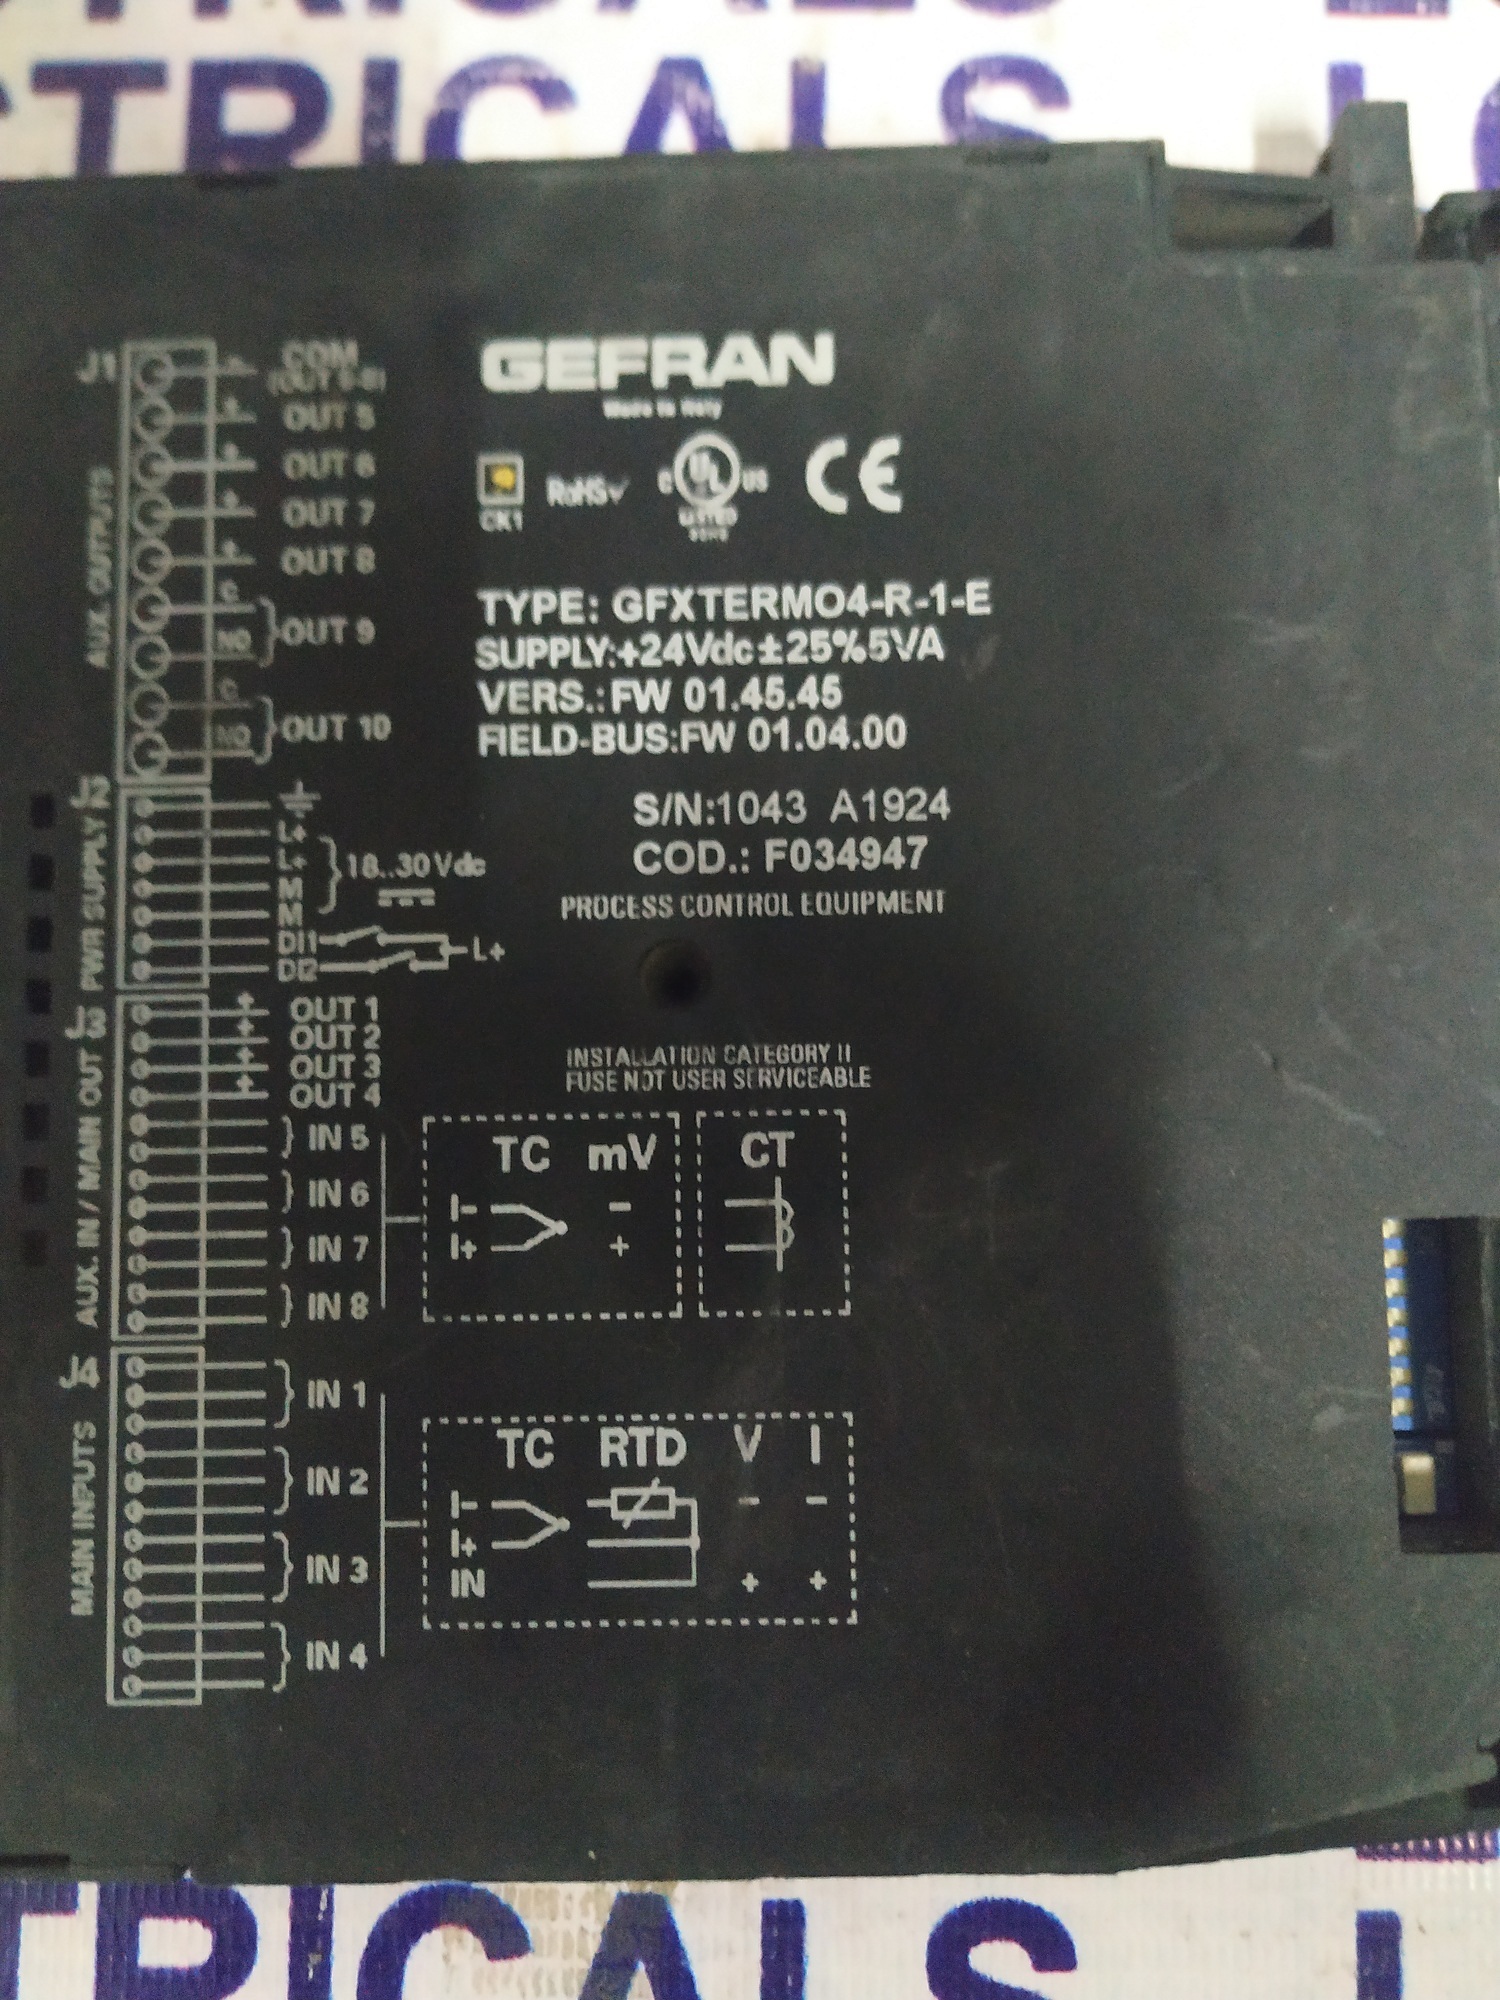 Gefran Power Controller Gfxterm04-r-1-e